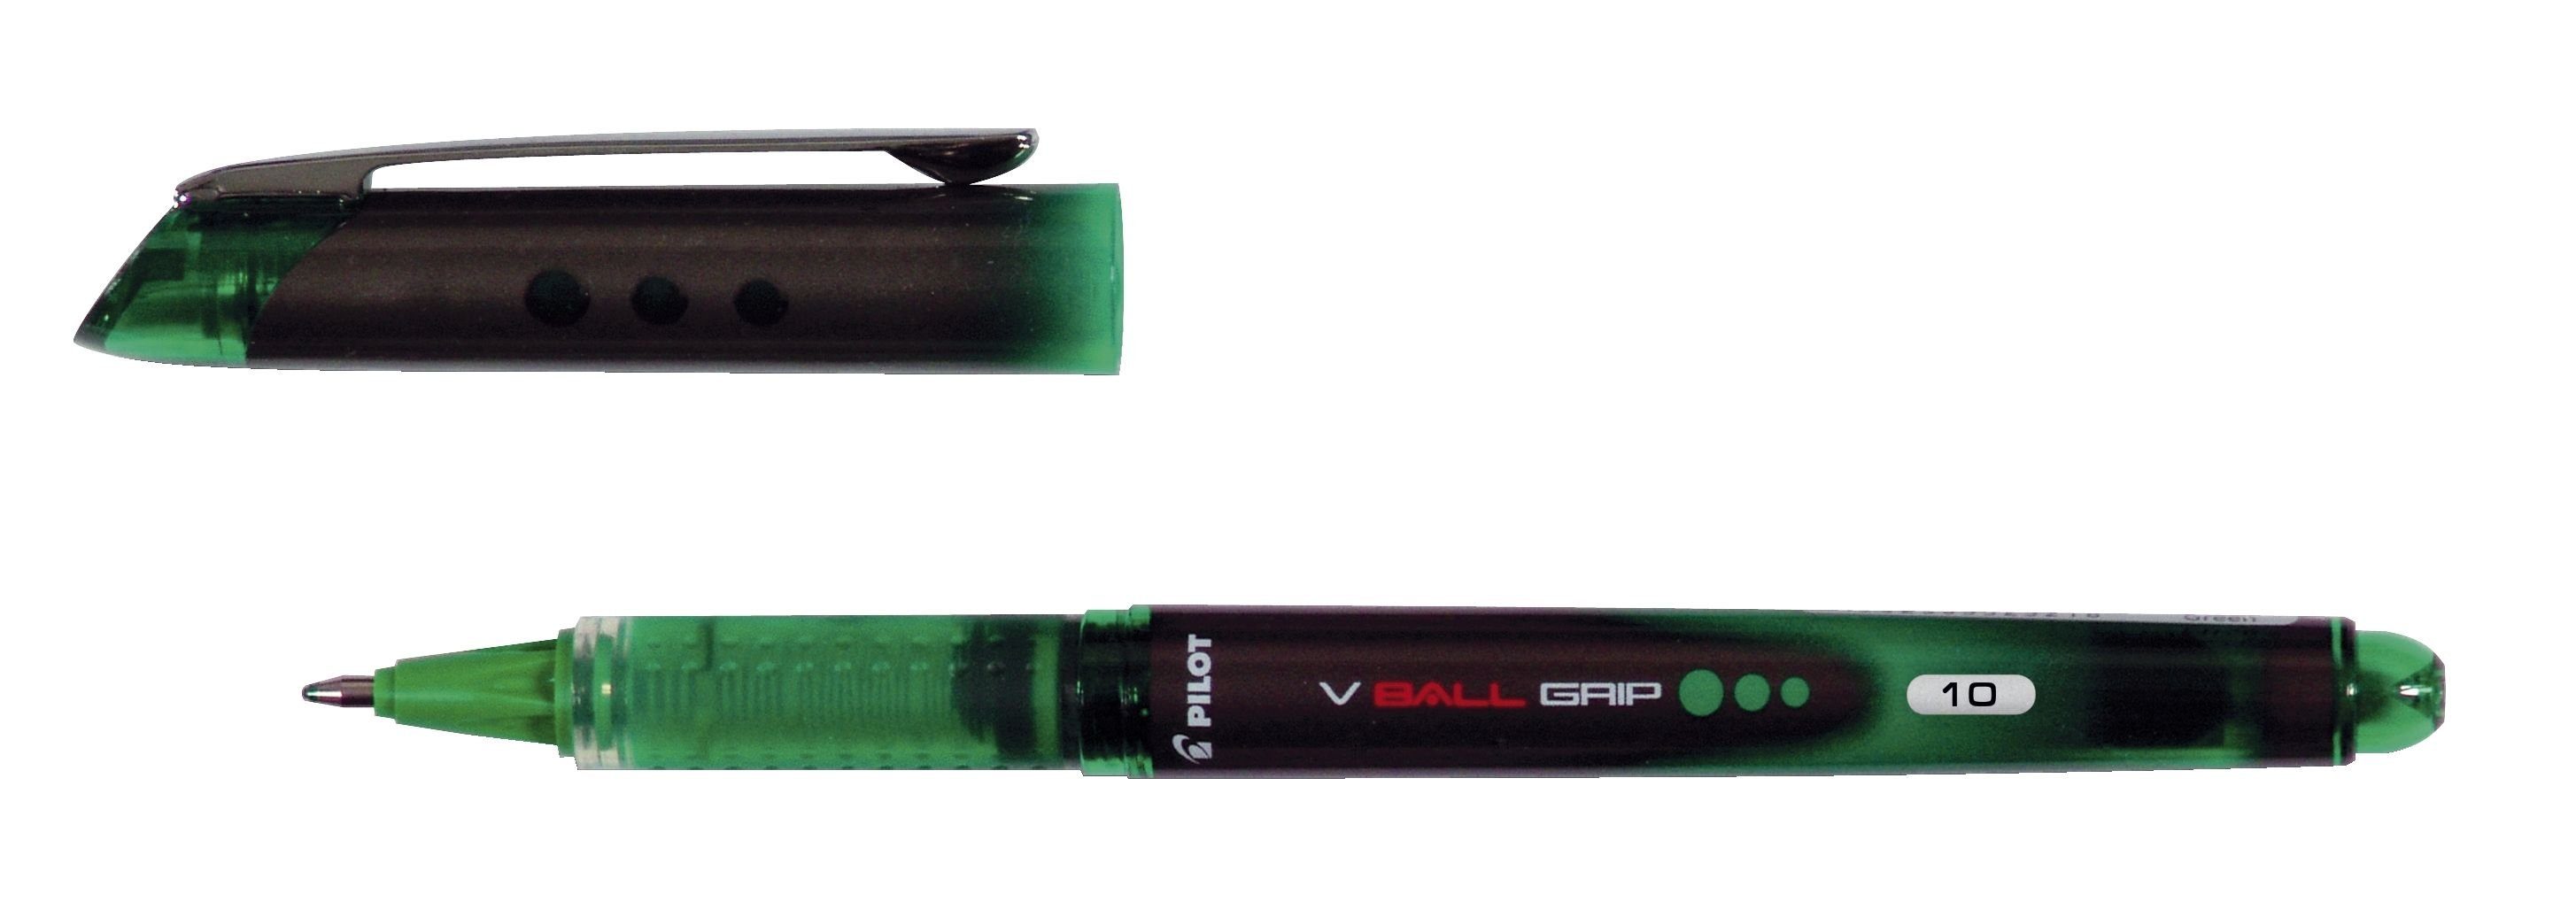 PILOT PILOT V-BALL GRIP 10 Tintenroller 0,6 mm, Schreibfarbe: grün Tintenpatrone